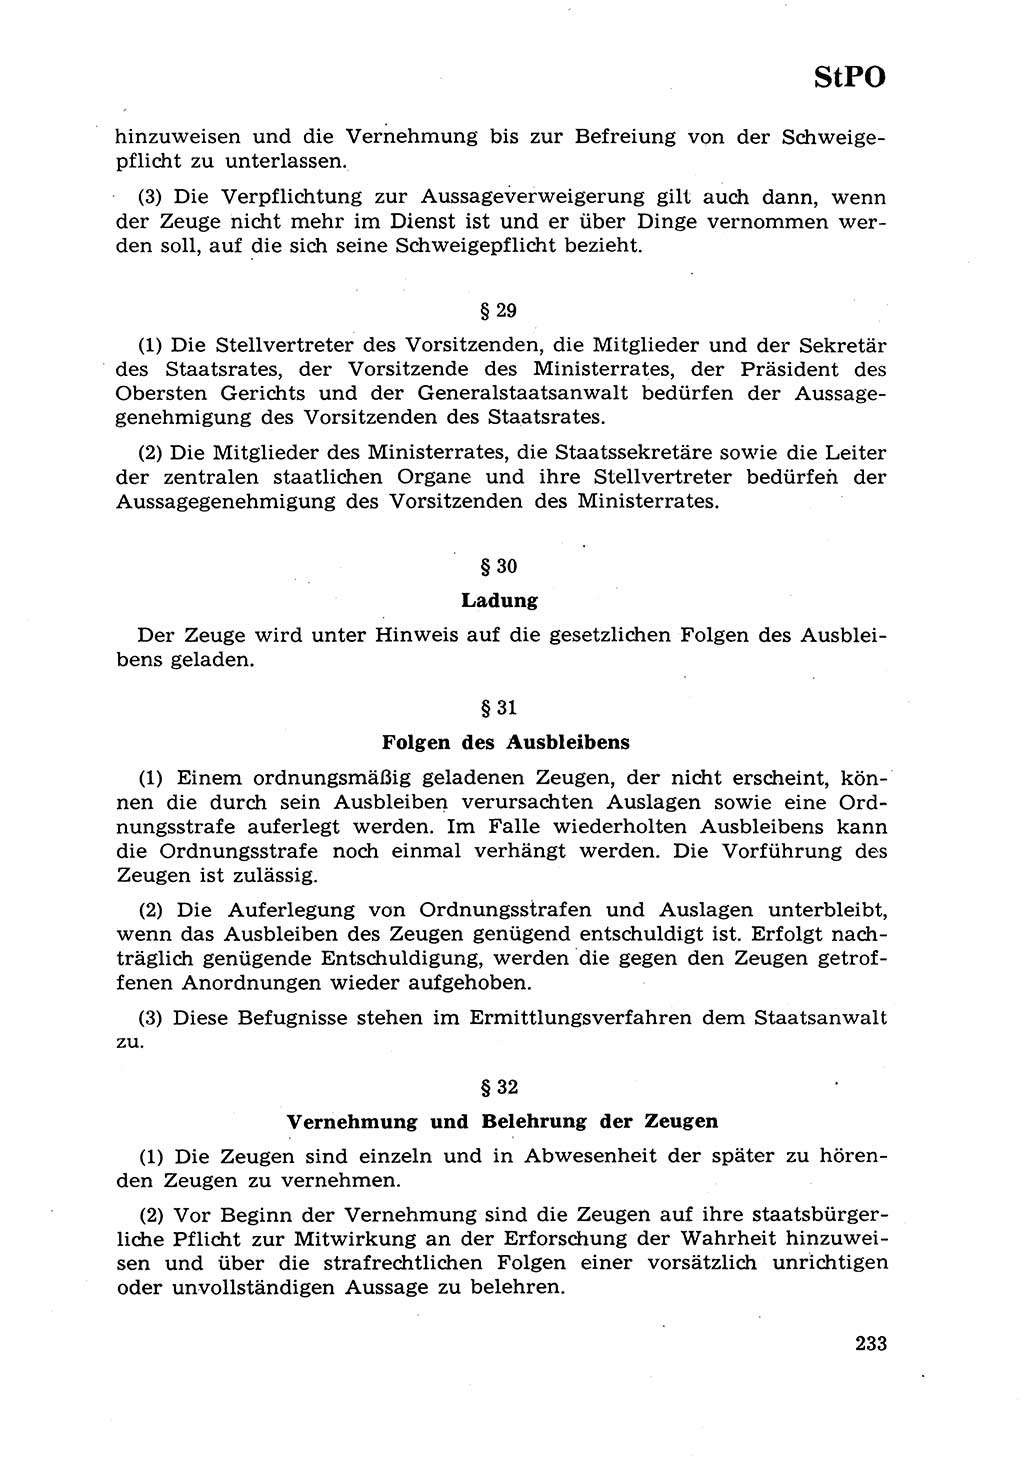 Strafrecht [Deutsche Demokratische Republik (DDR)] 1968, Seite 233 (Strafr. DDR 1968, S. 233)